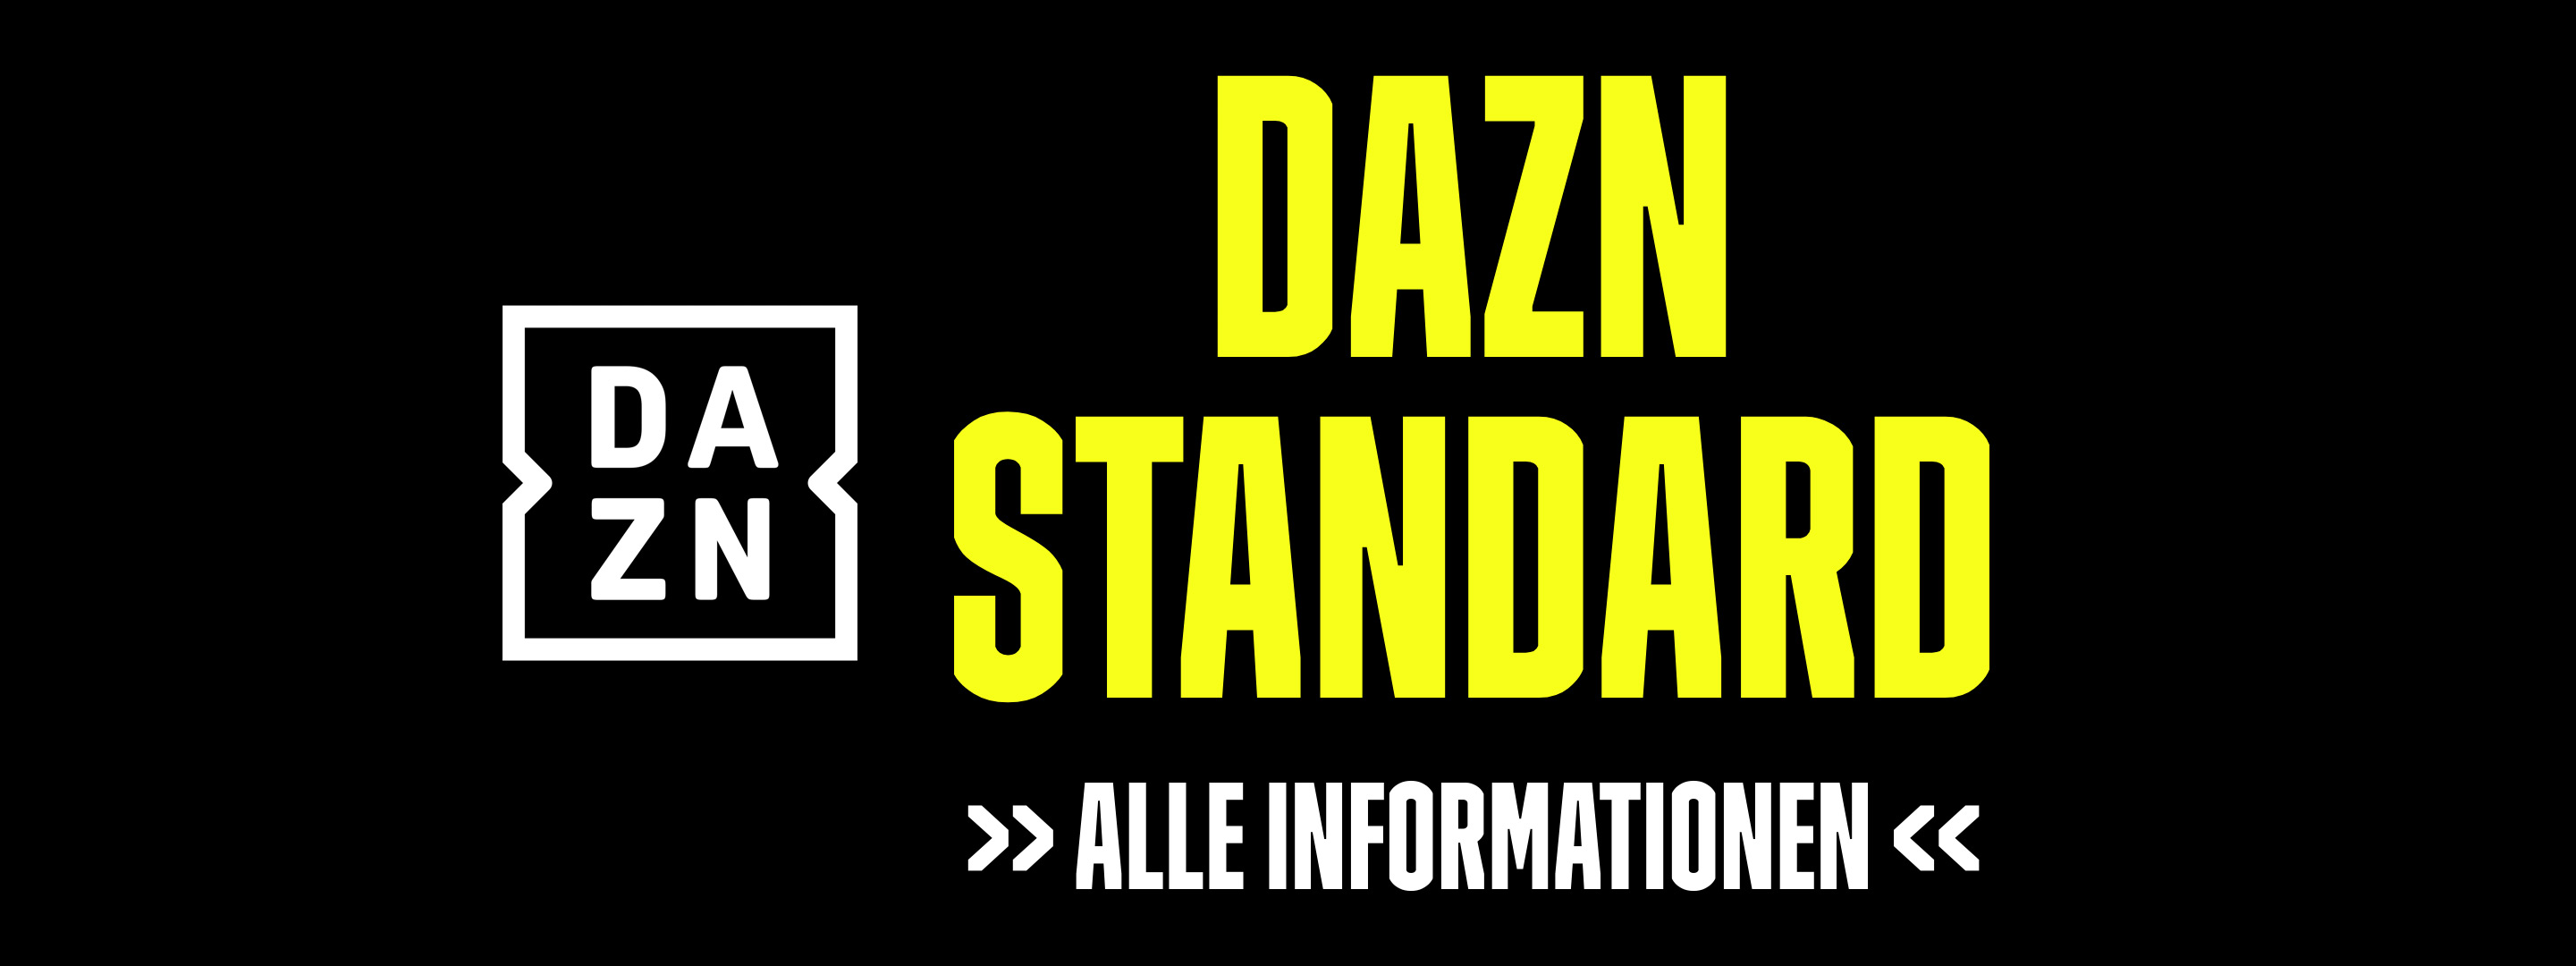 DAZN STANDARD Banner #3 mit Logo